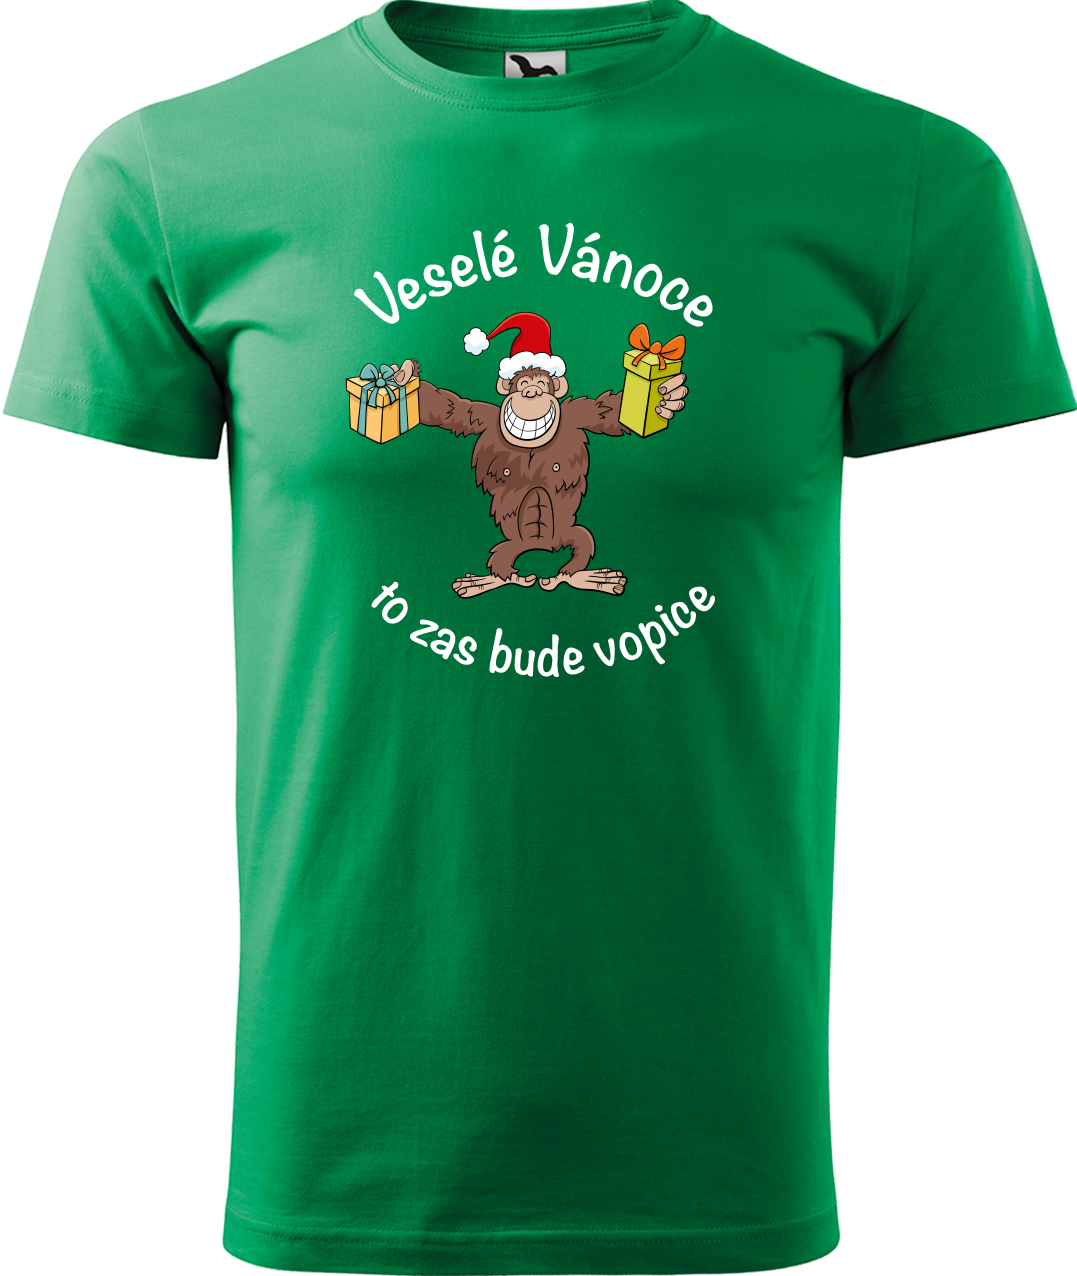 Pánské vánoční tričko - Veselé Vánoce to zas bude vopice (hnědý opičák) Velikost: XL, Barva: Středně zelená (16)